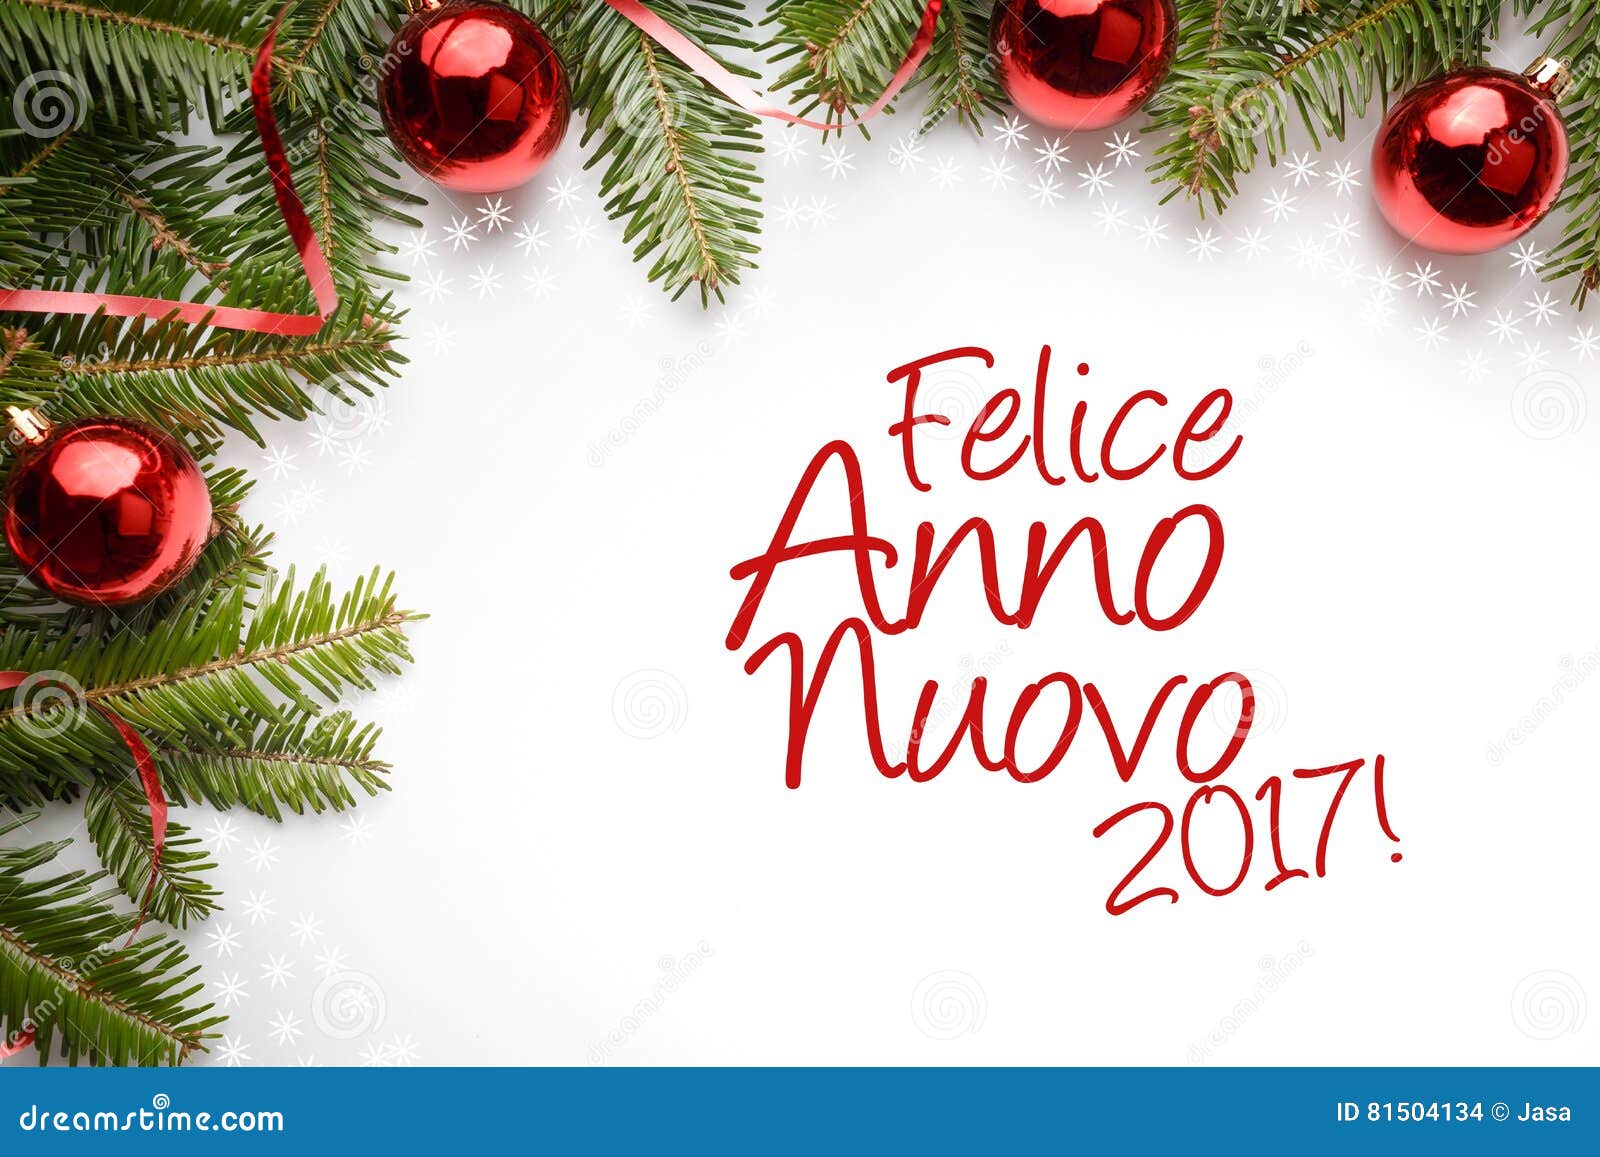 Decoraciones De La Navidad Con El Saludo Del Año Nuevo En El ` Italiano  Felice Anno Nuovo 2017! ` Foto de archivo - Imagen de decoraciones, bola:  81504134